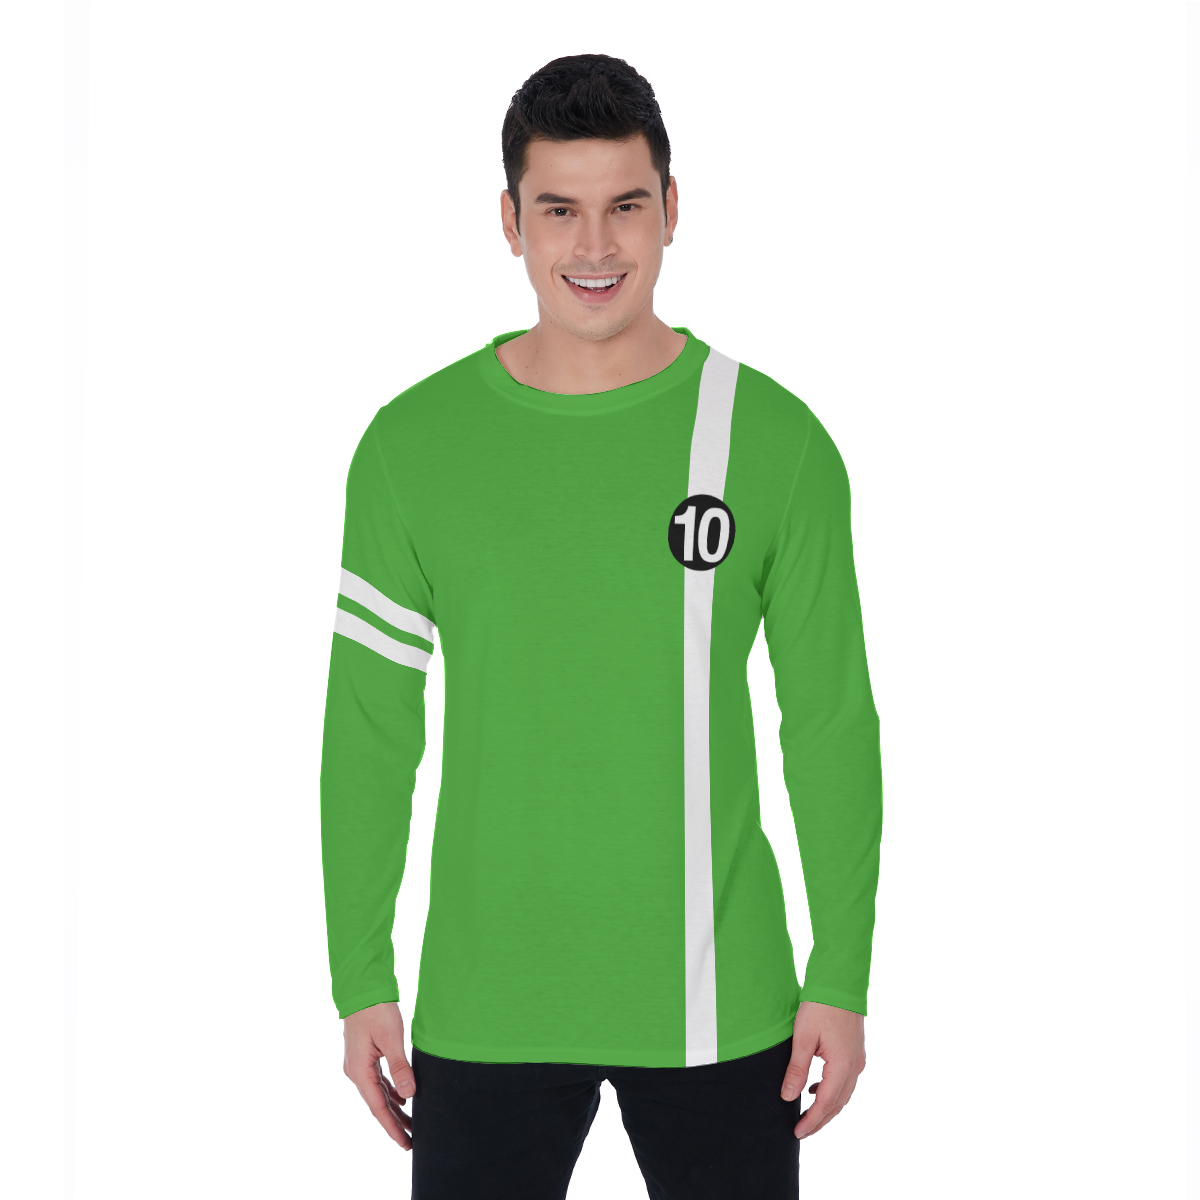 Green 10 long Sleeved Shirt